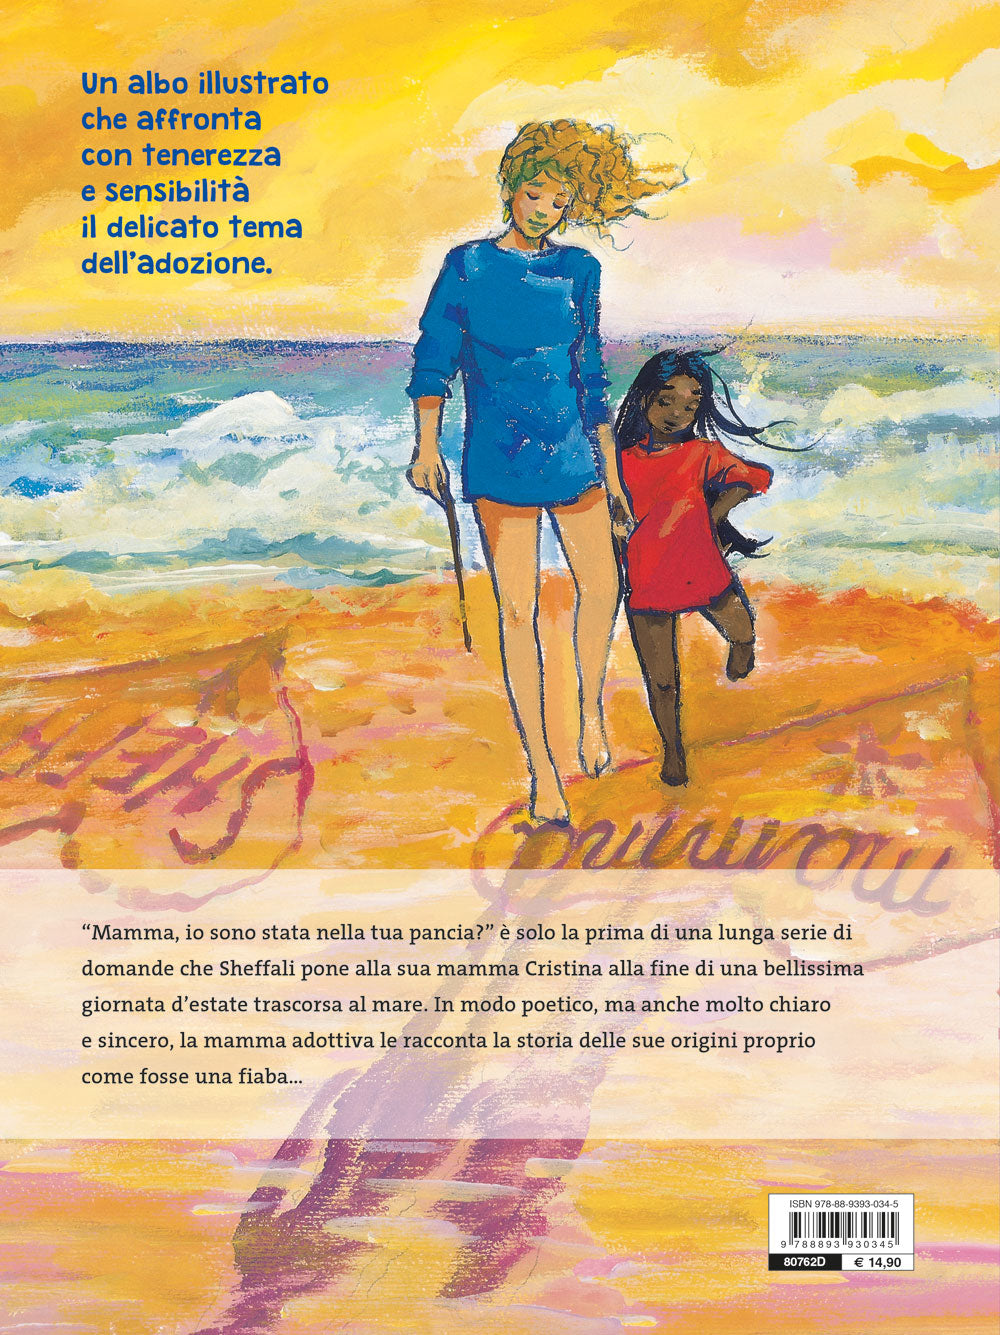 Mamma di pancia, mamma di cuore::Premio Gigante delle Langhe 2004 per le illustrazioni. Premio Pippi 2006 menzione speciale per il testo.